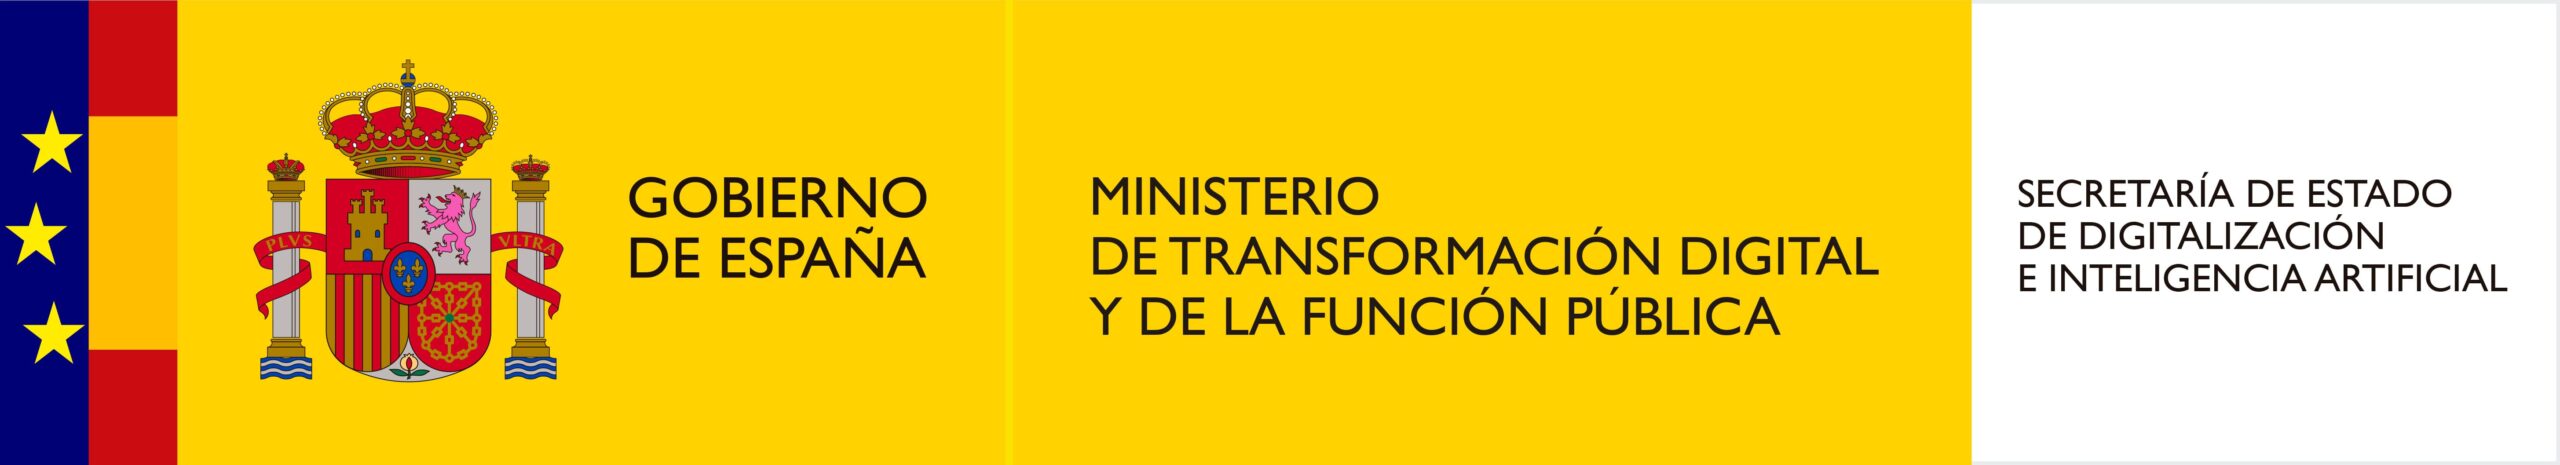 logo ministerio de transformacion digital y de la funcion publica